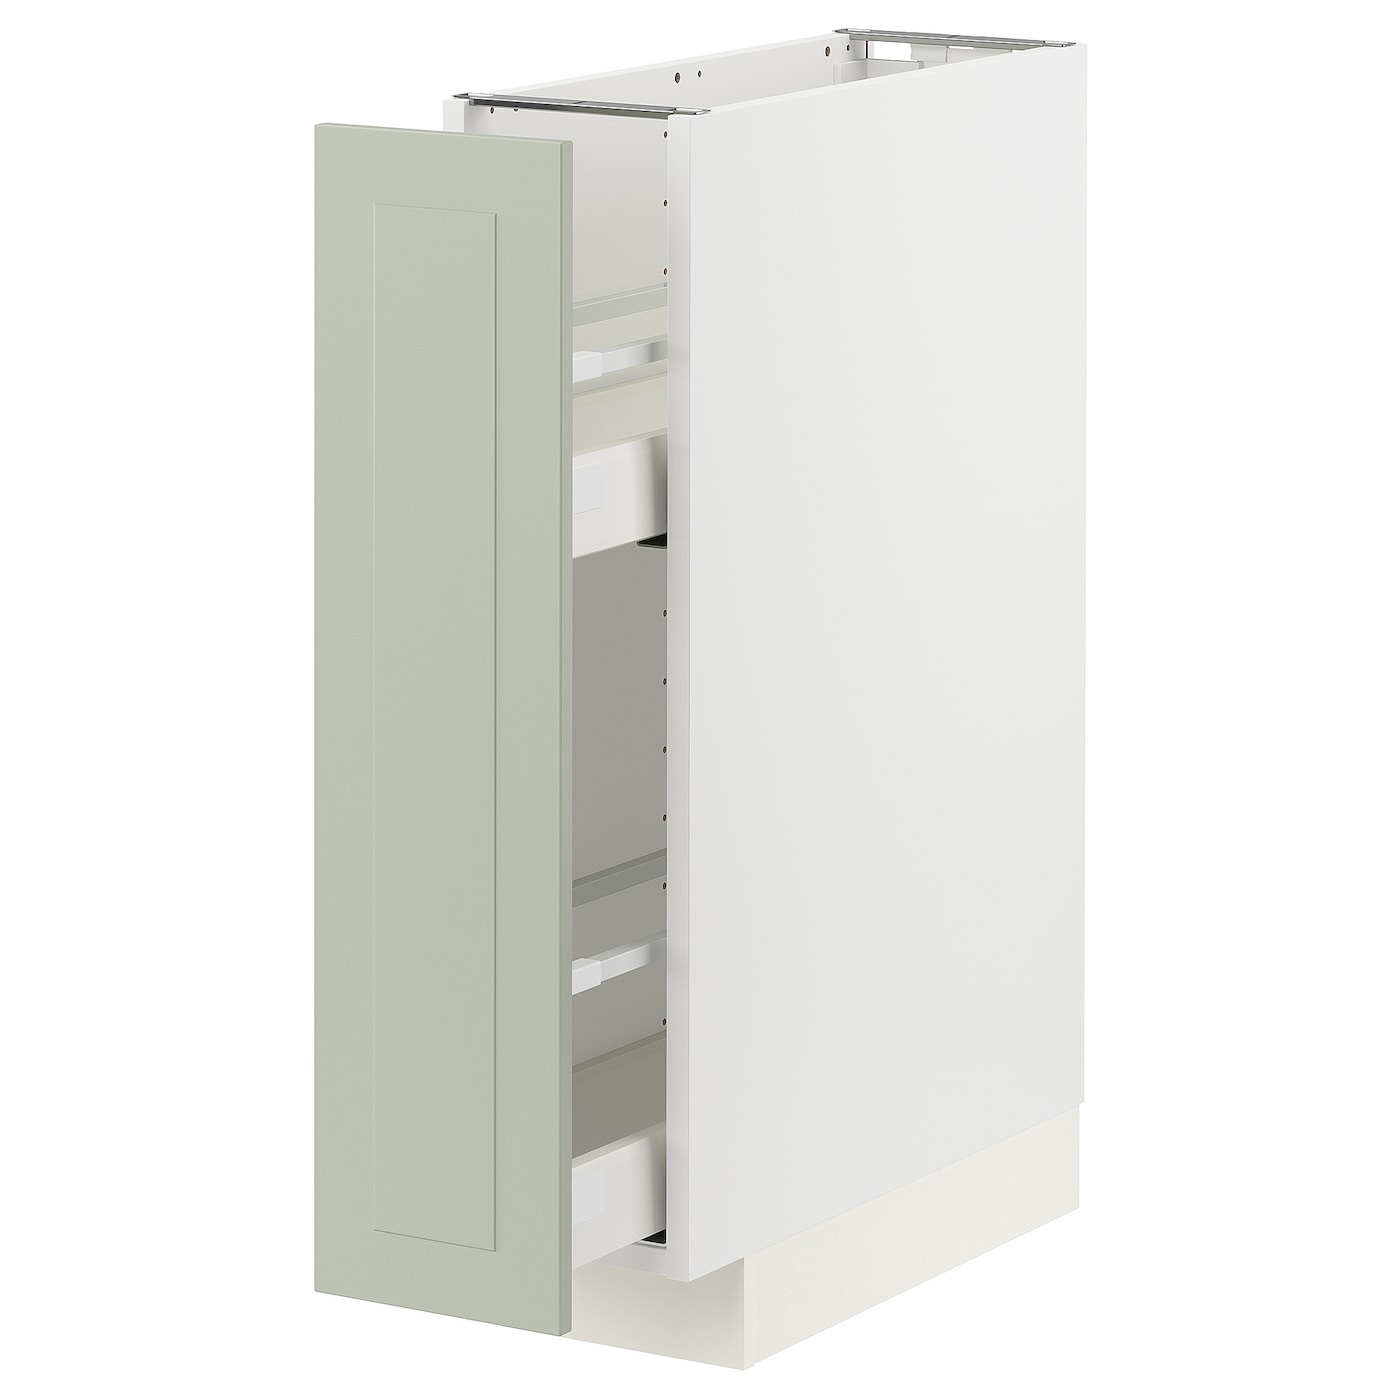 Напольный кухонный шкаф - IKEA METOD MAXIMERA, 88x62x20см, белый/светло-зеленый, МЕТОД МАКСИМЕРА ИКЕА